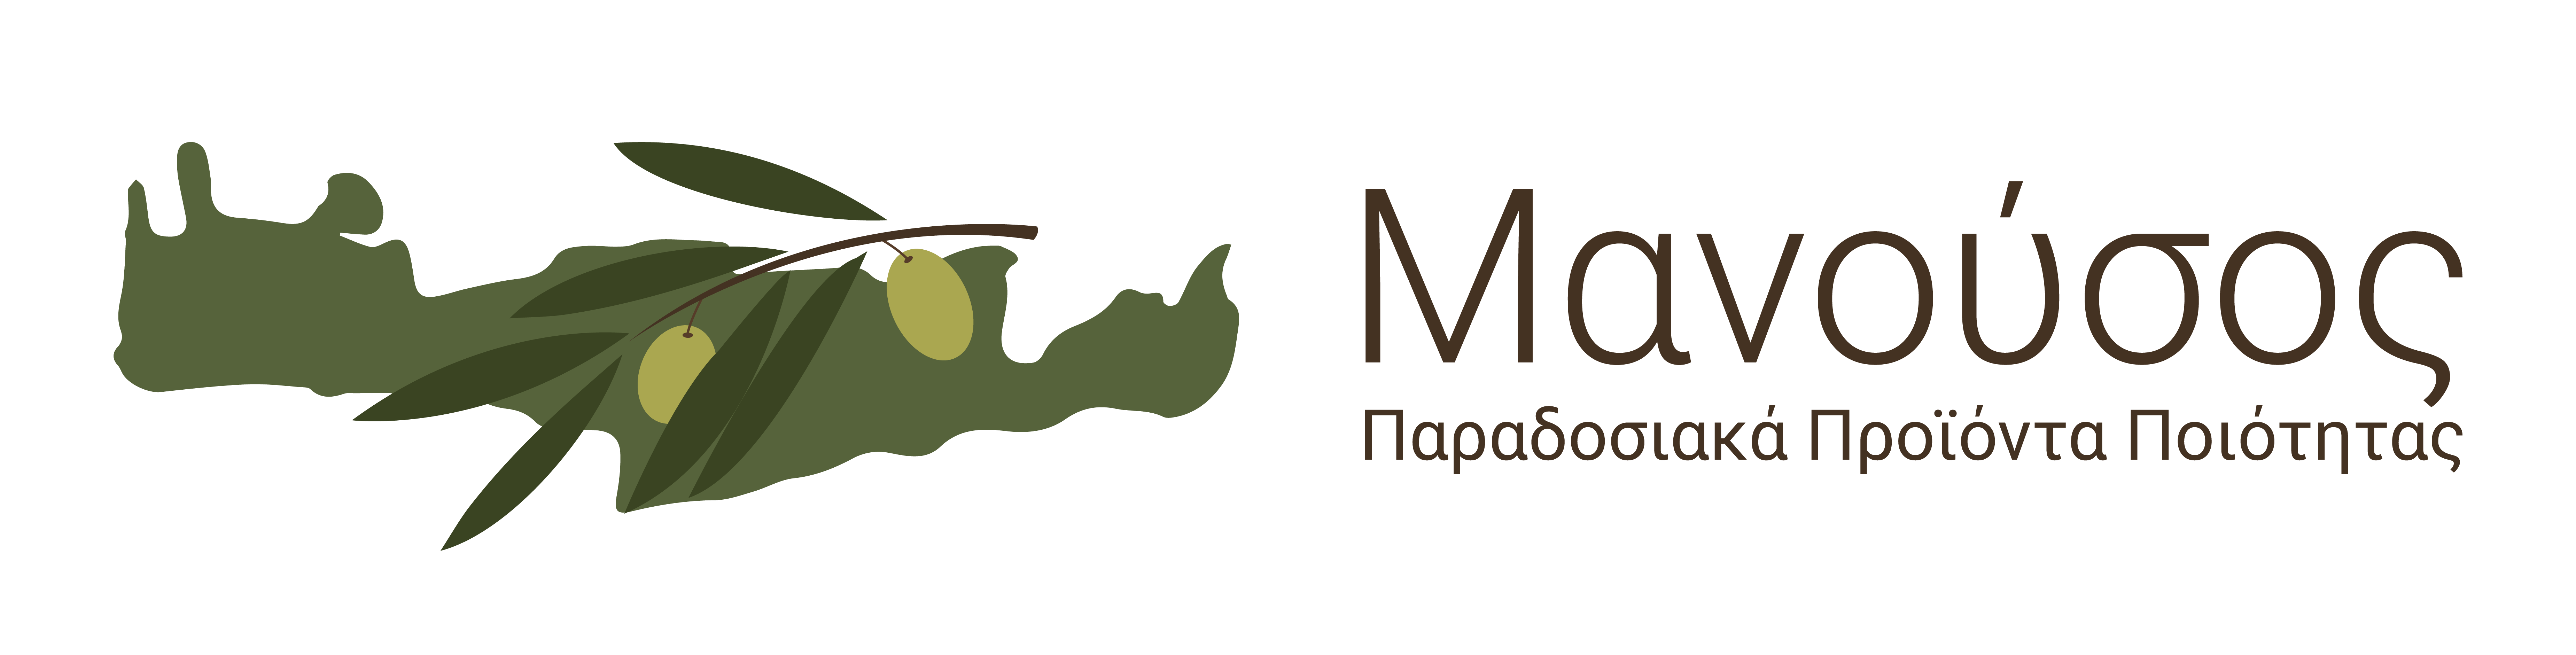 Manousos.com.gr - Παραδοσιακά Προϊόντα Ποιότητας